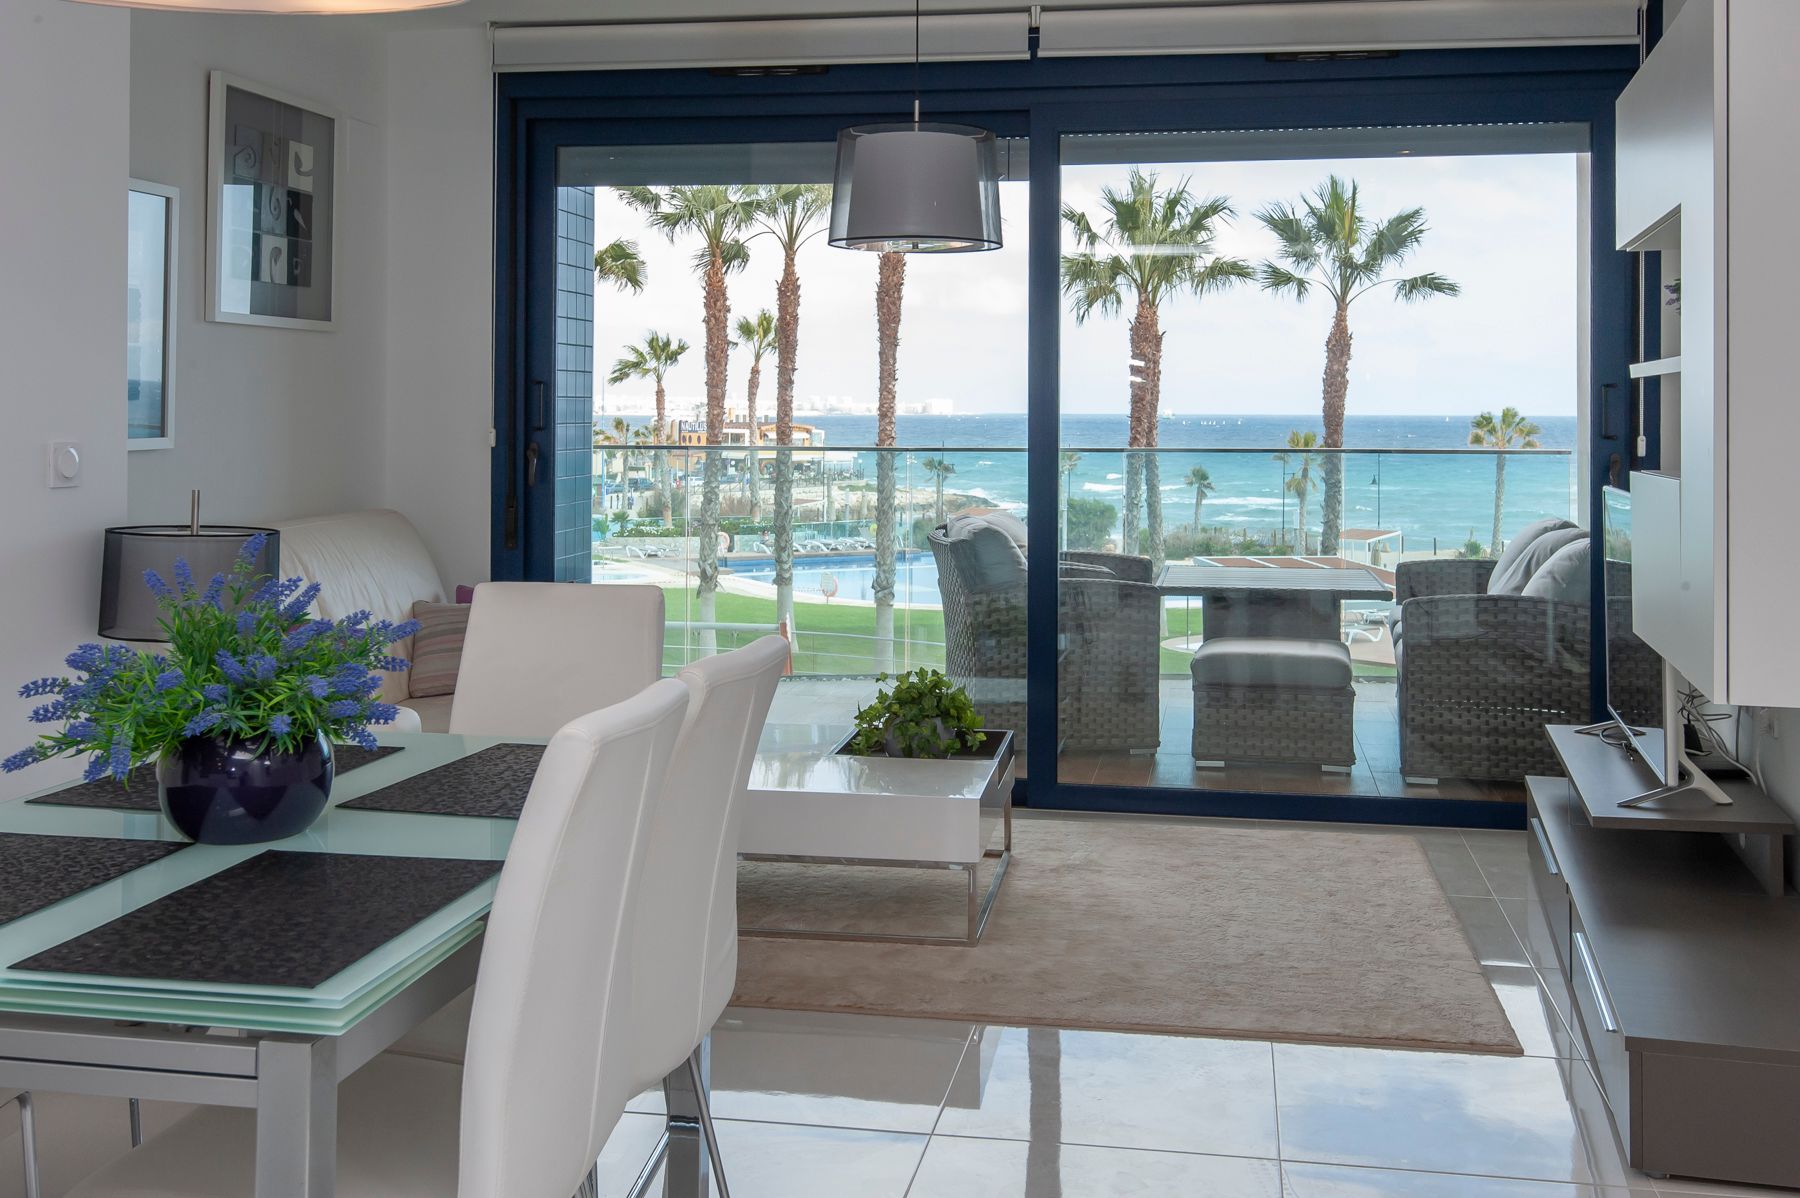 En stue med spisestuebord og utsikt til balkong og strand med palmer